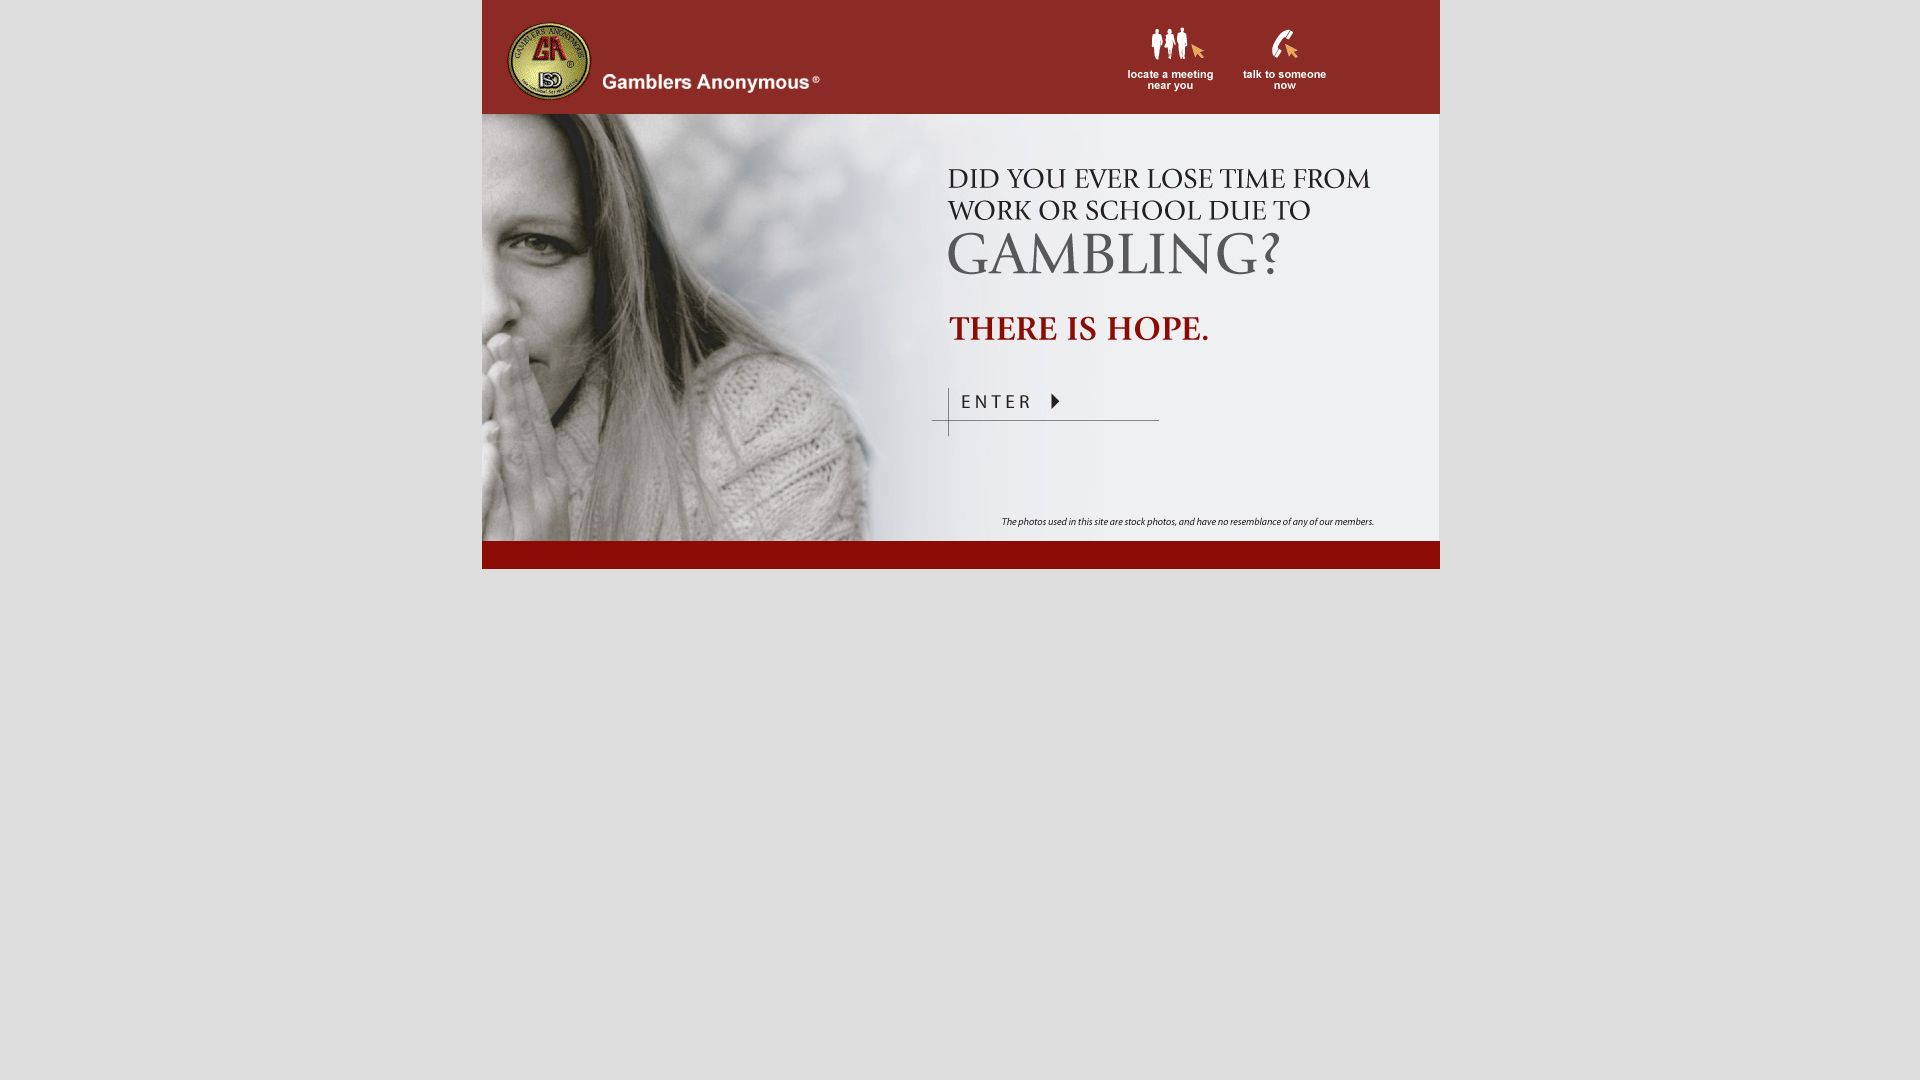 Estado web gamblersanonymous.org está   ONLINE